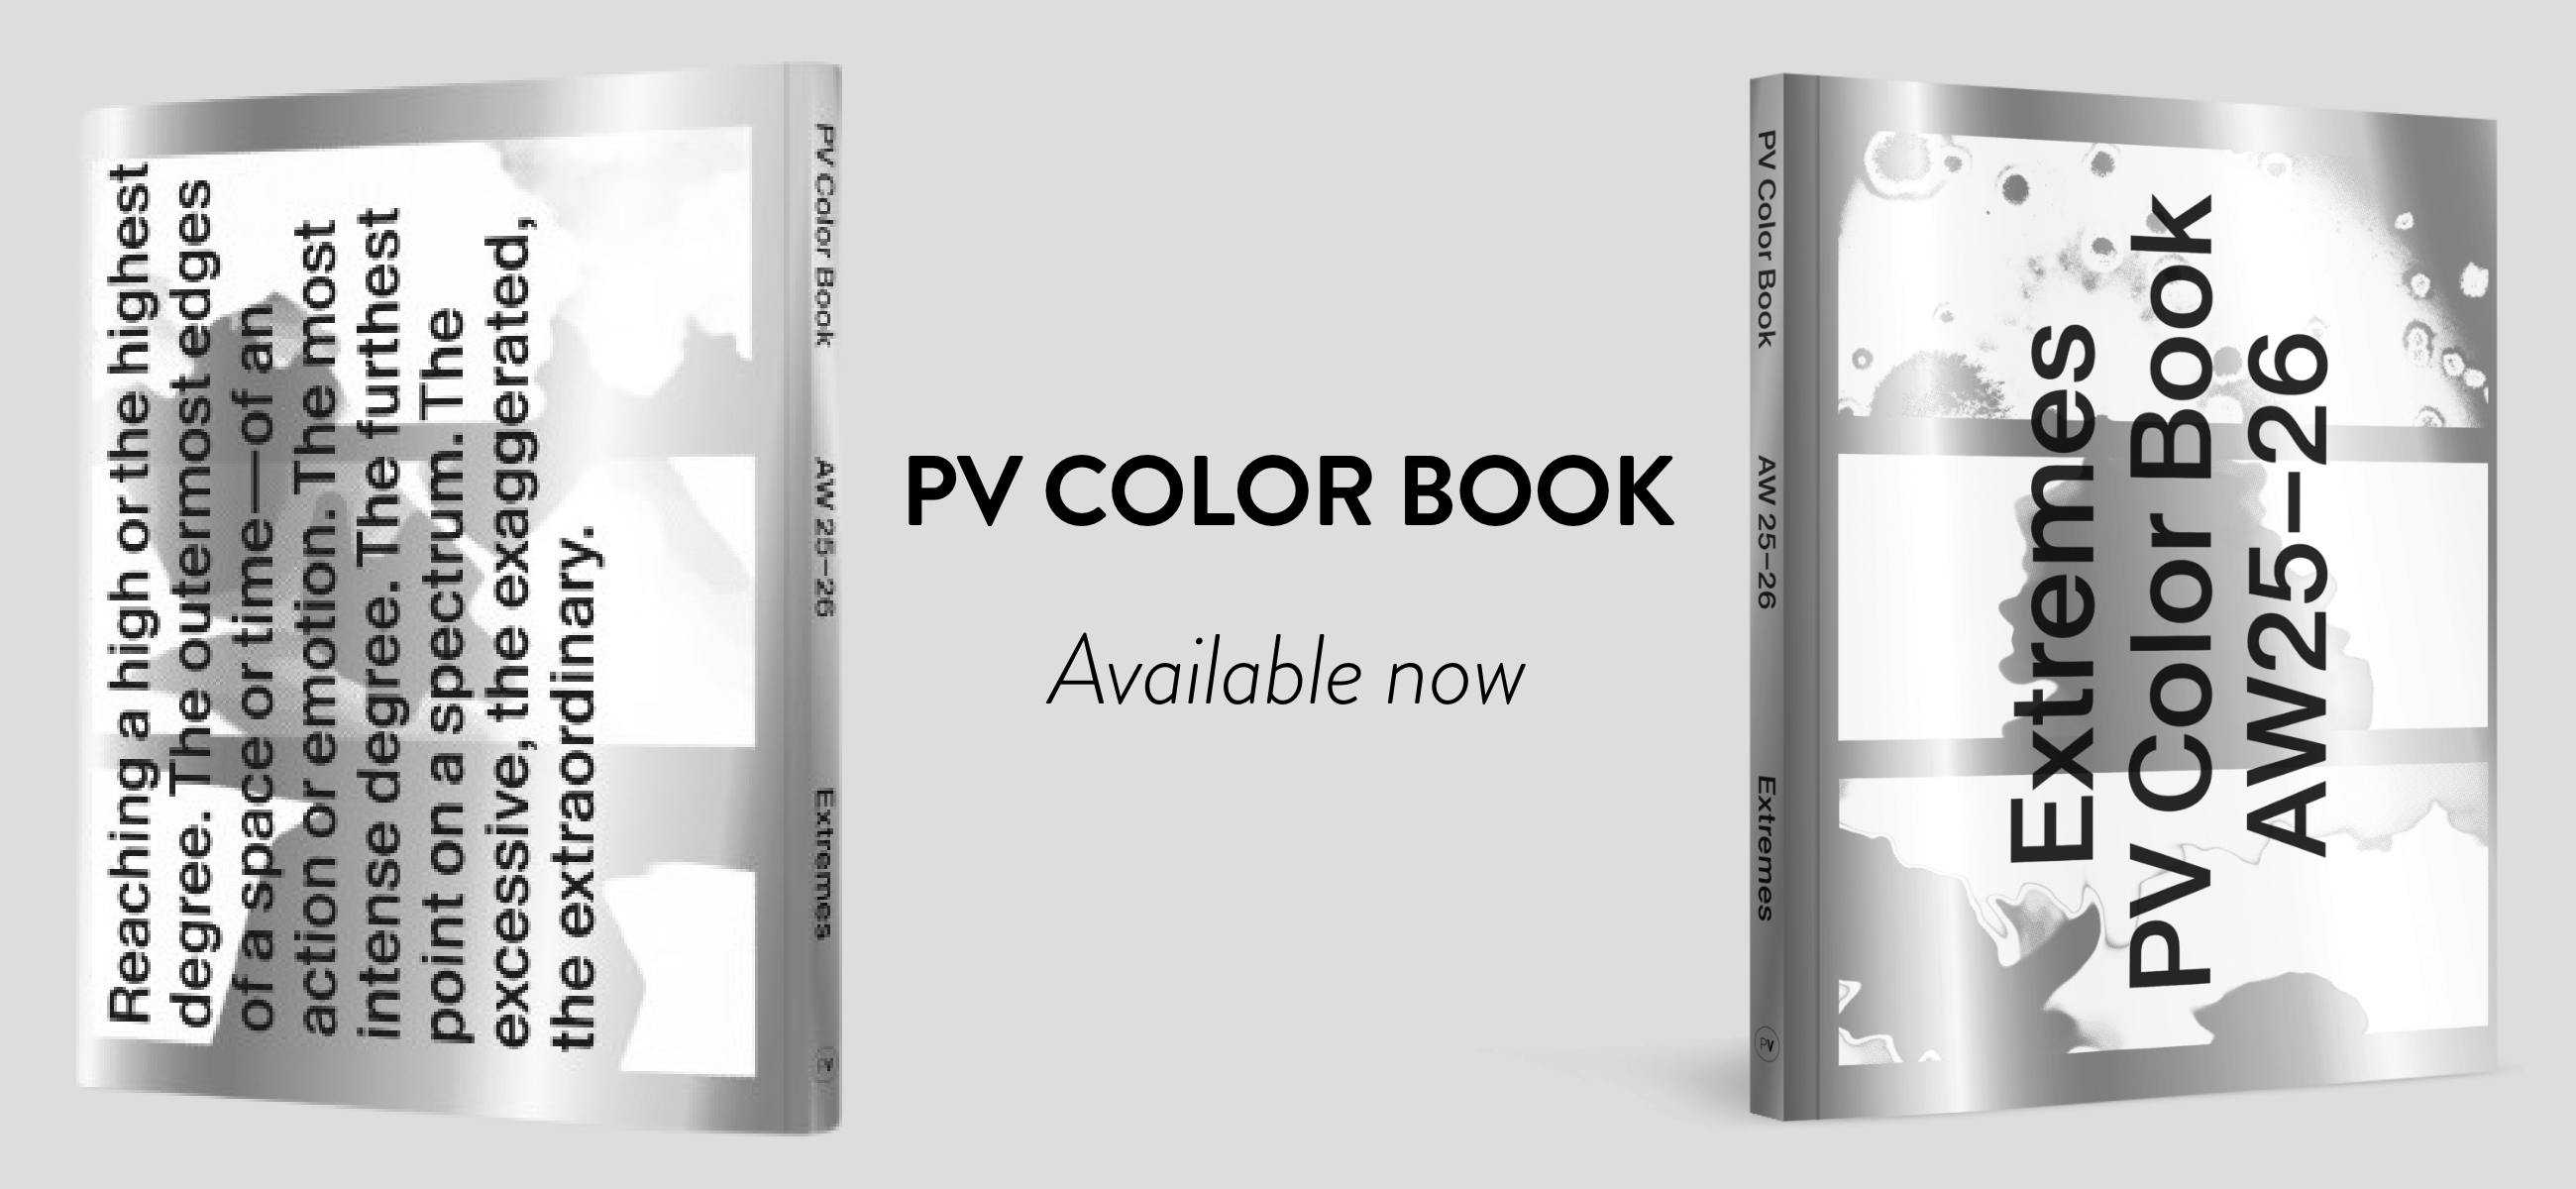 The PV Color Book PV Magazine